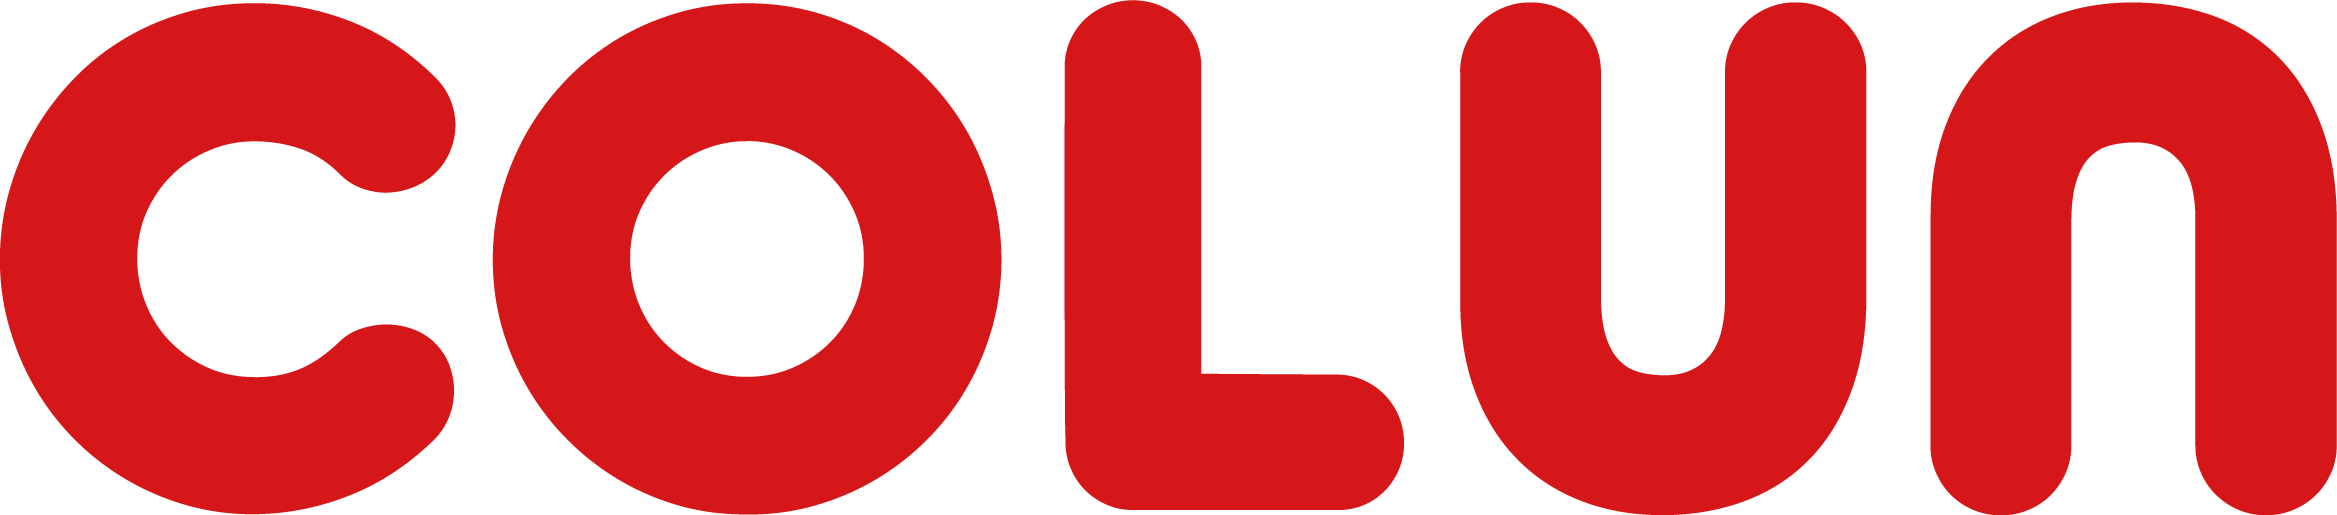 colun logo 16 red